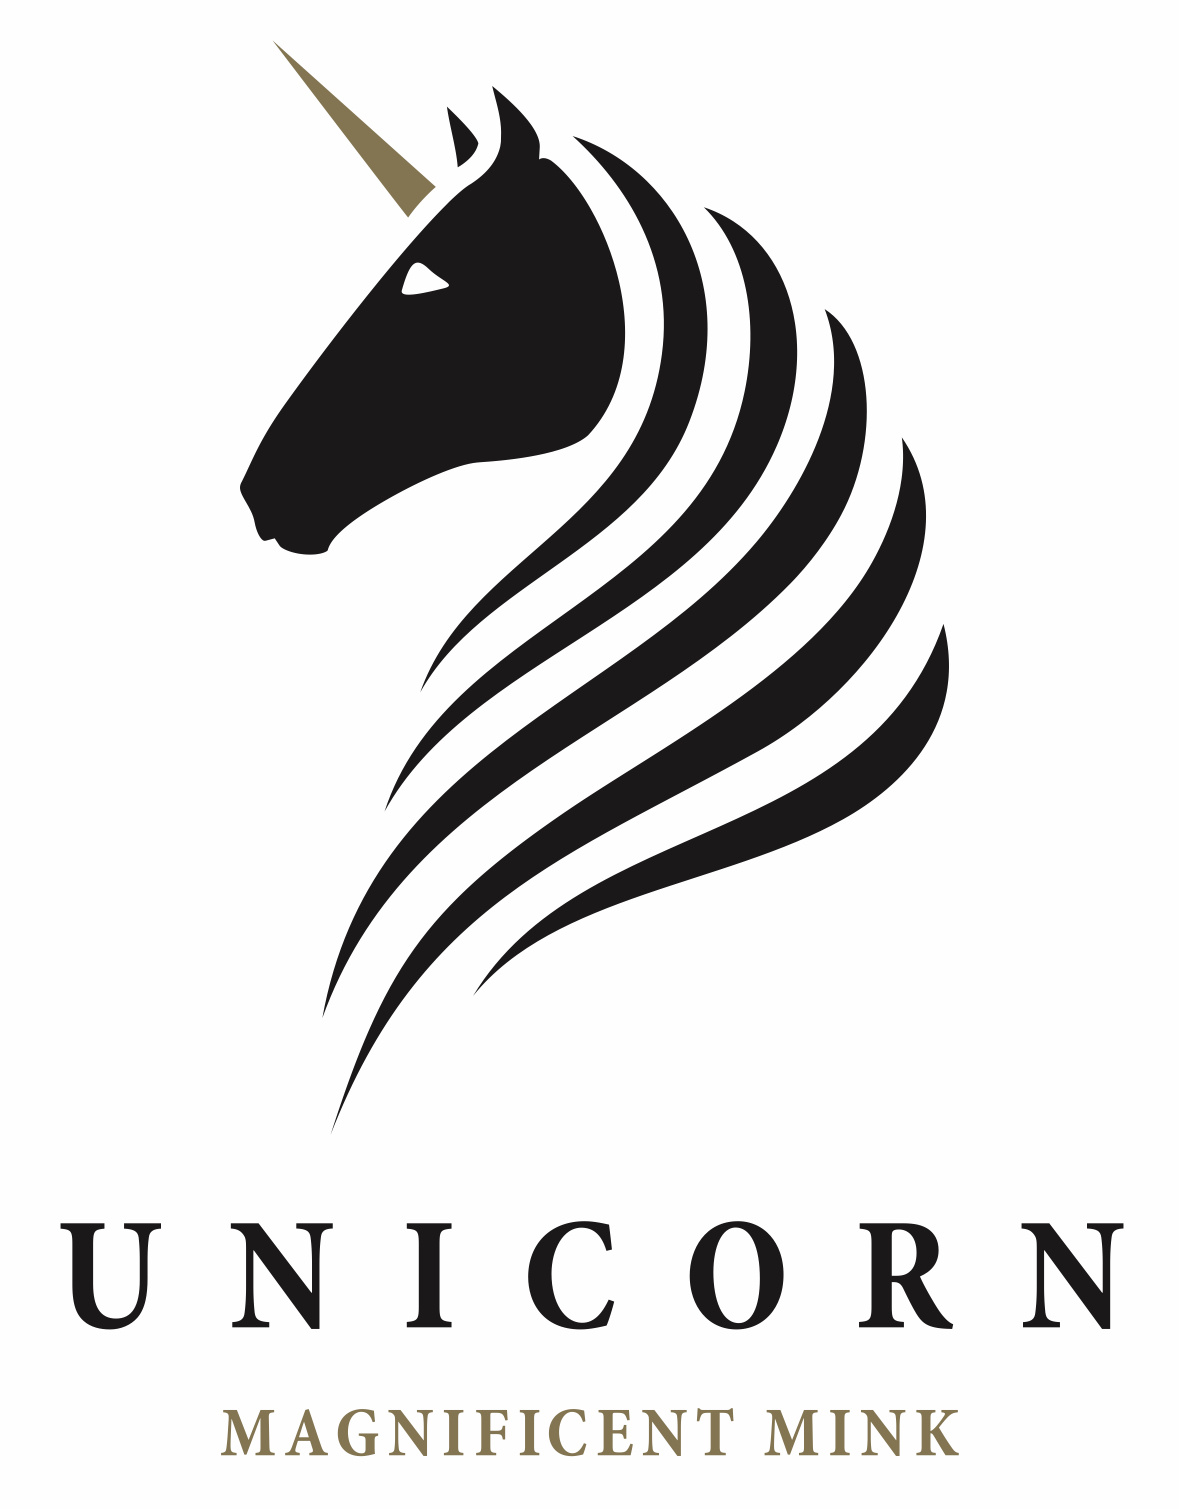 Image: Unicorn offering at SAGA Furs